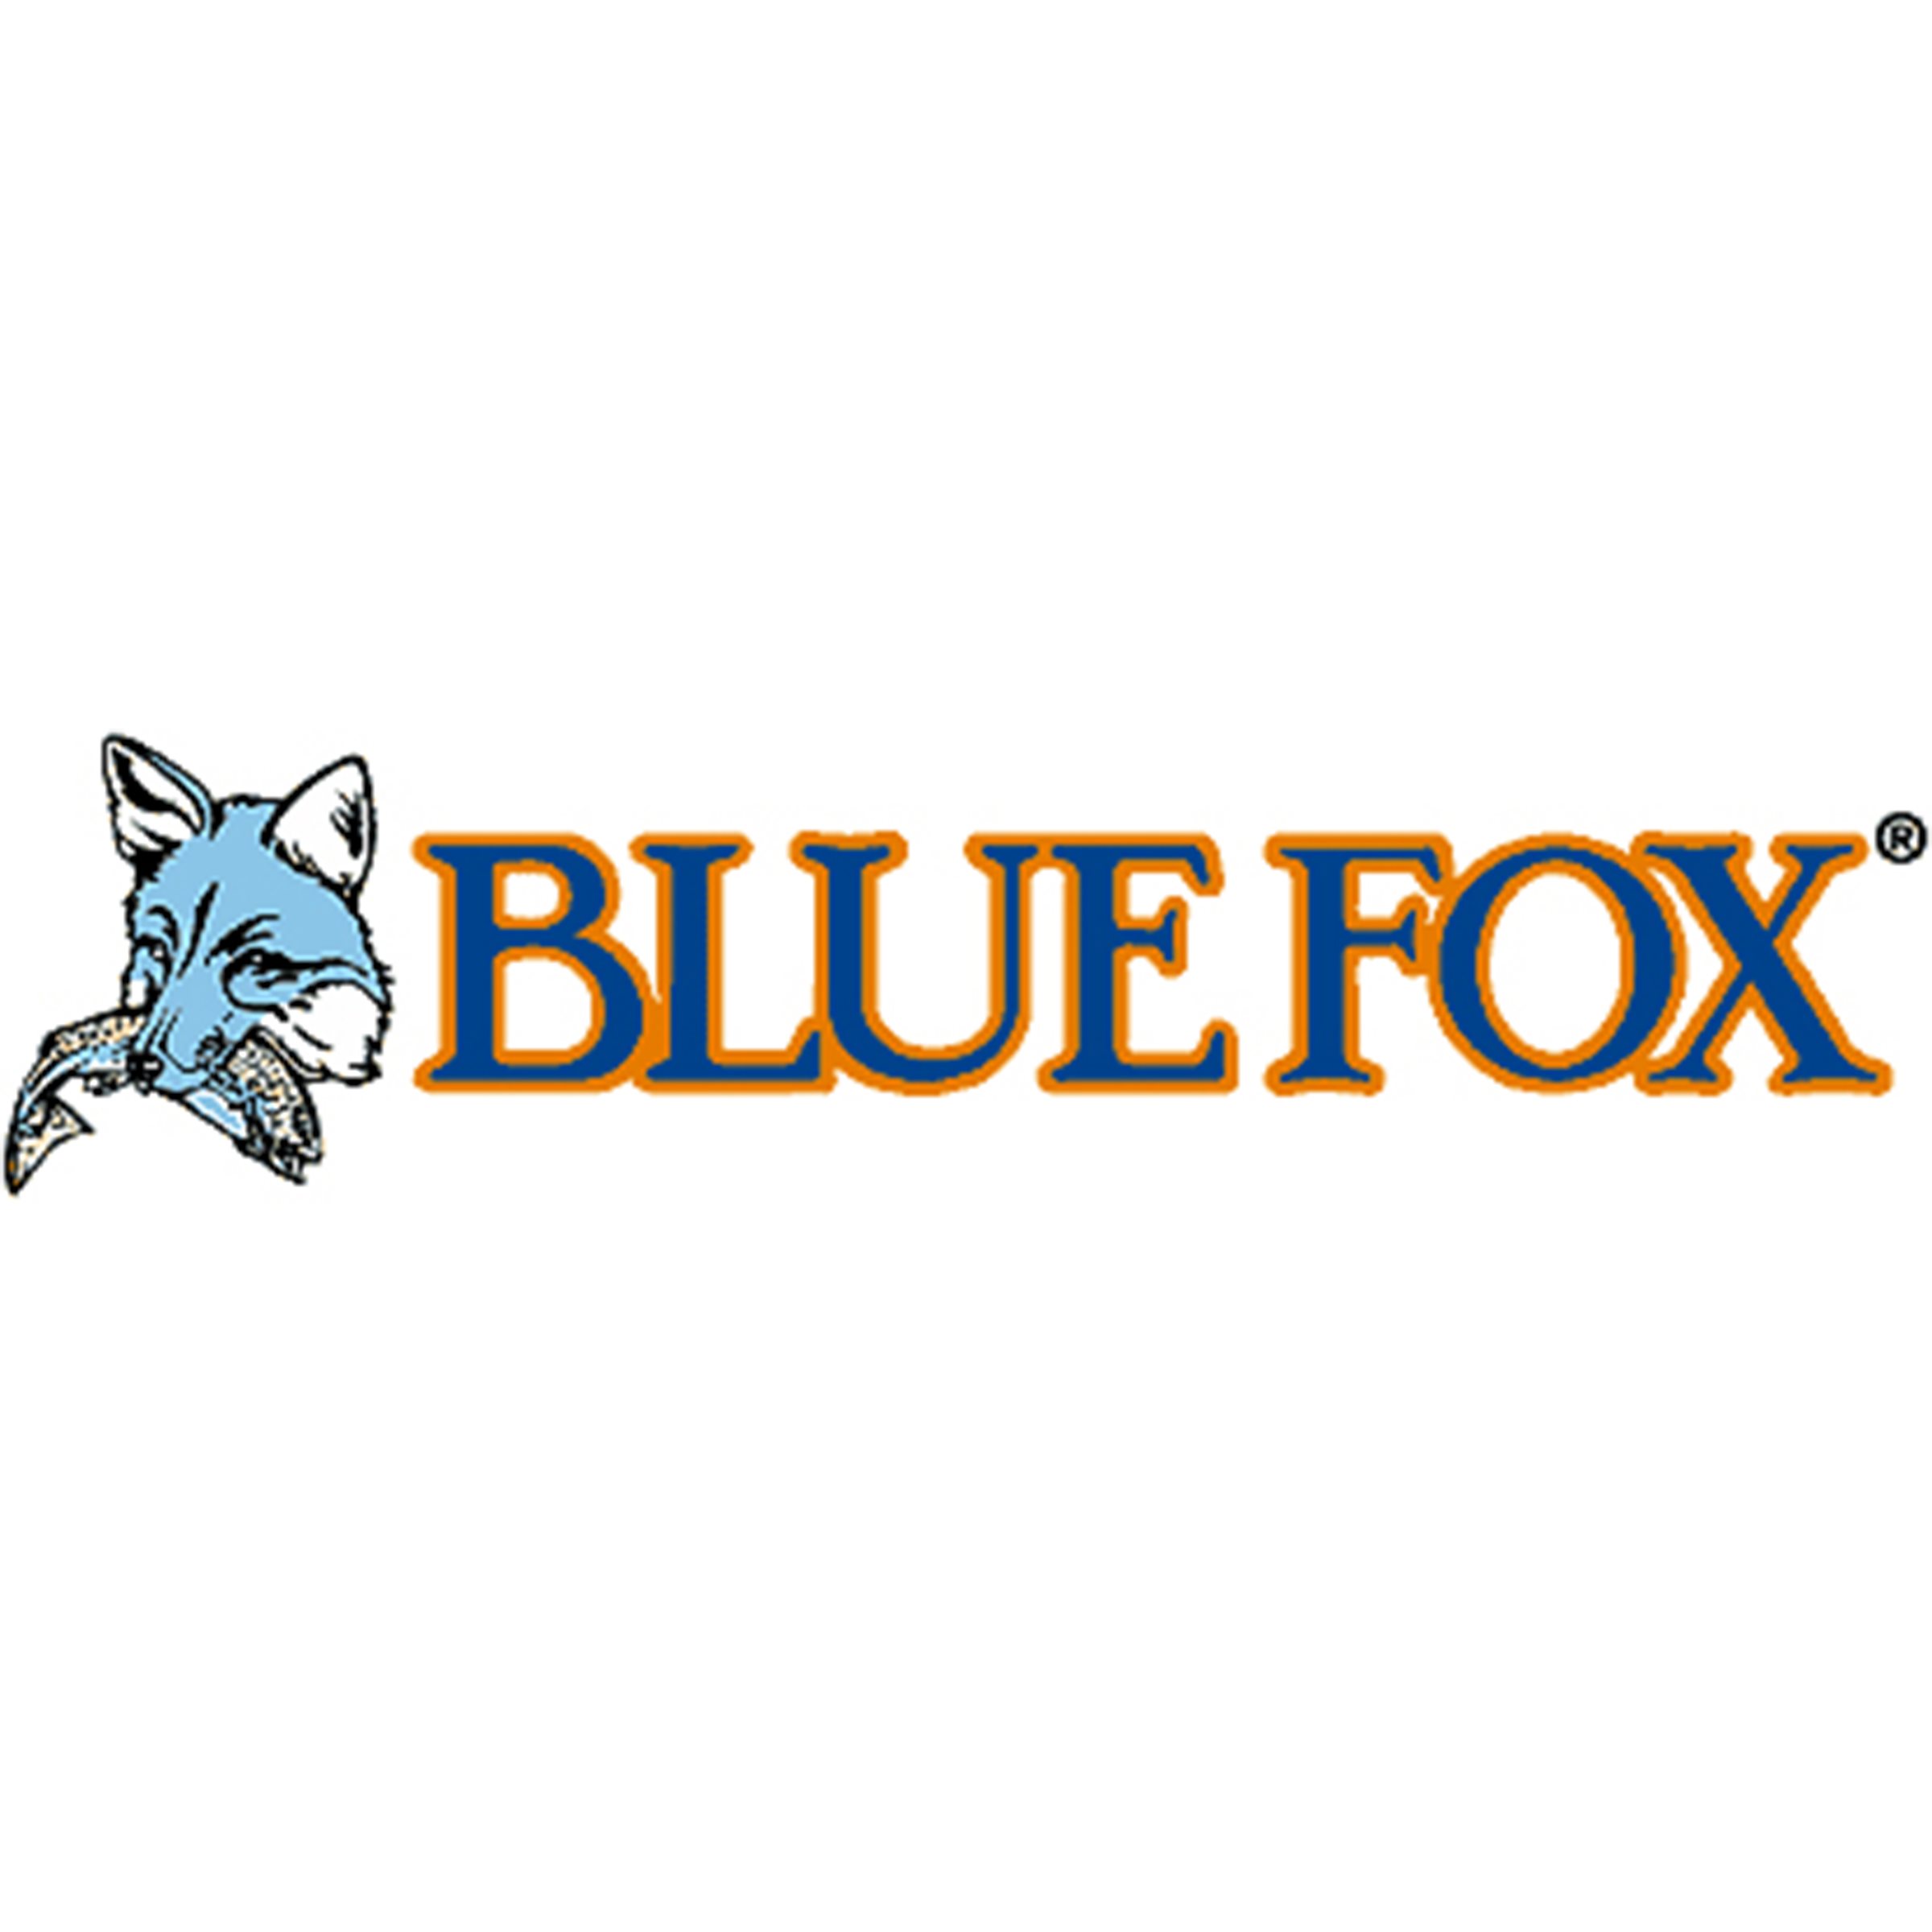 A_Blue-fox